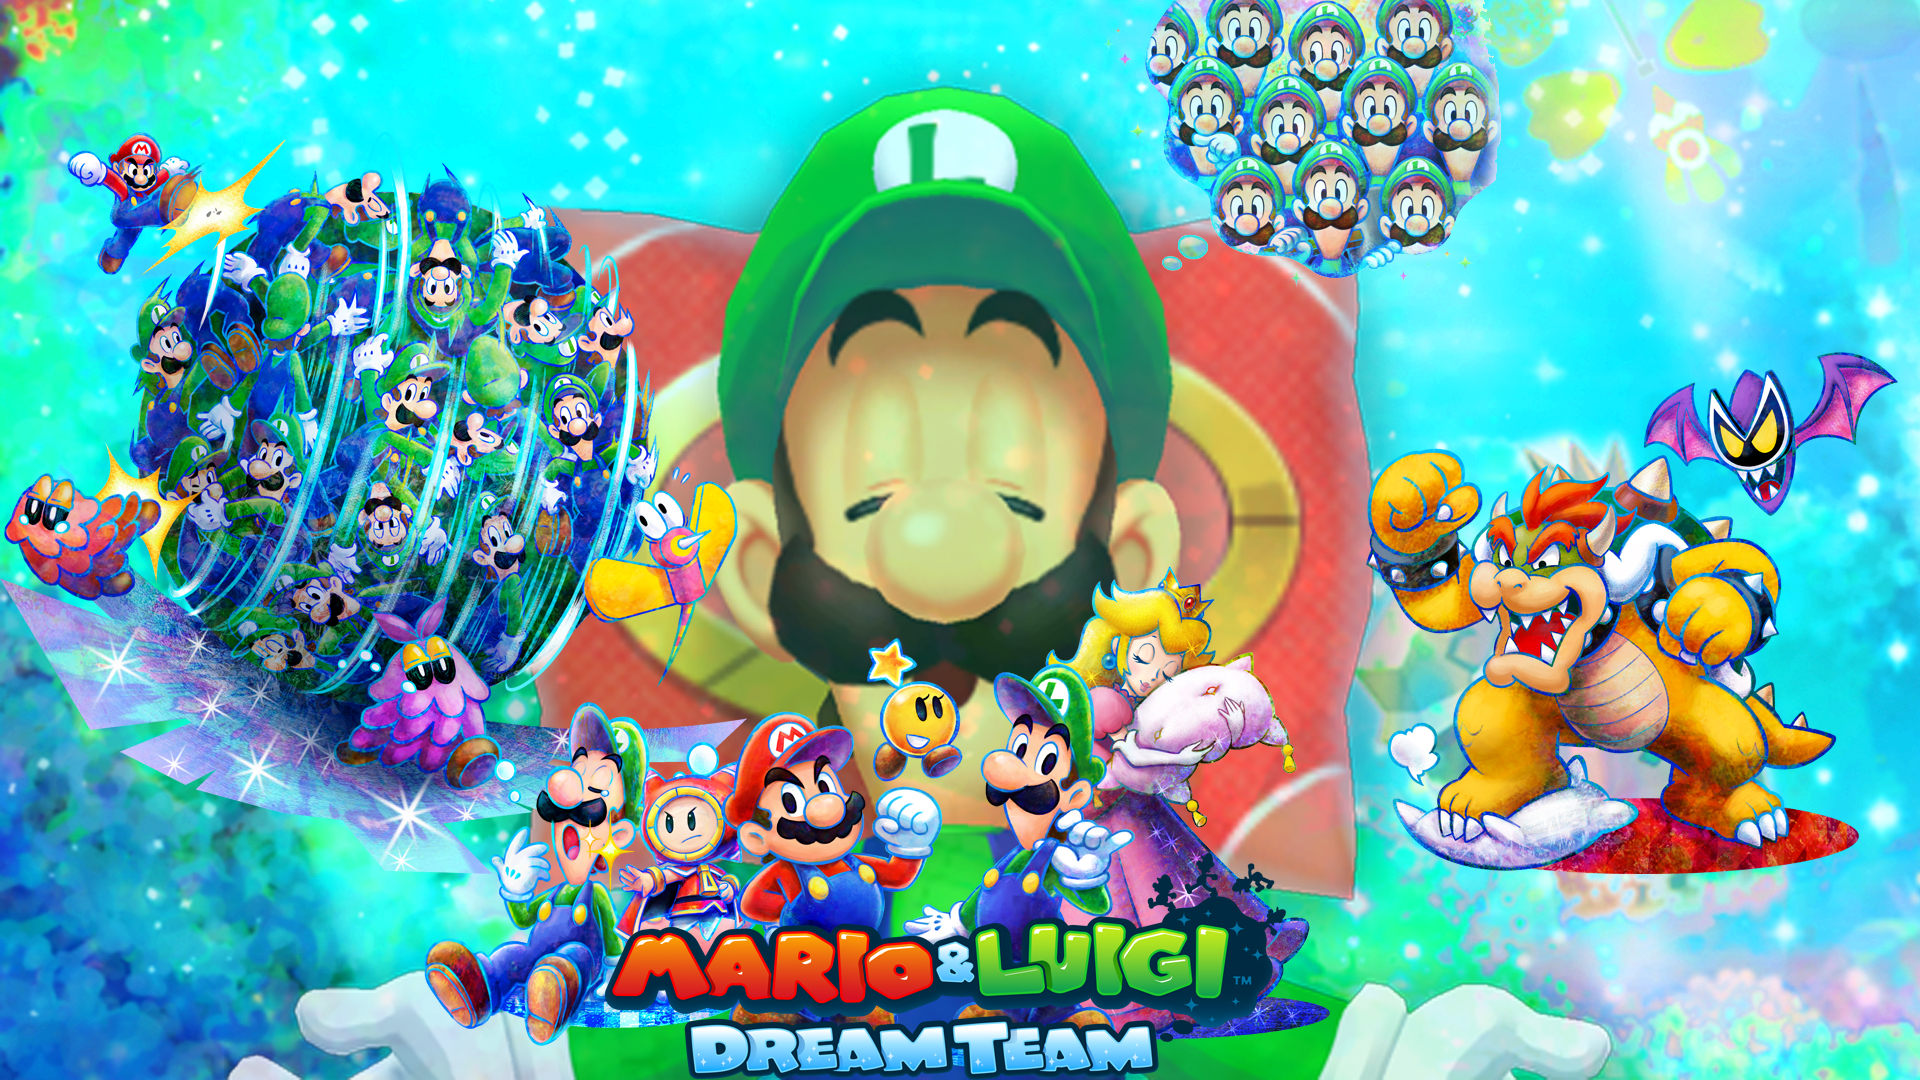 Mario And Luigi Dream Team Wallpaper